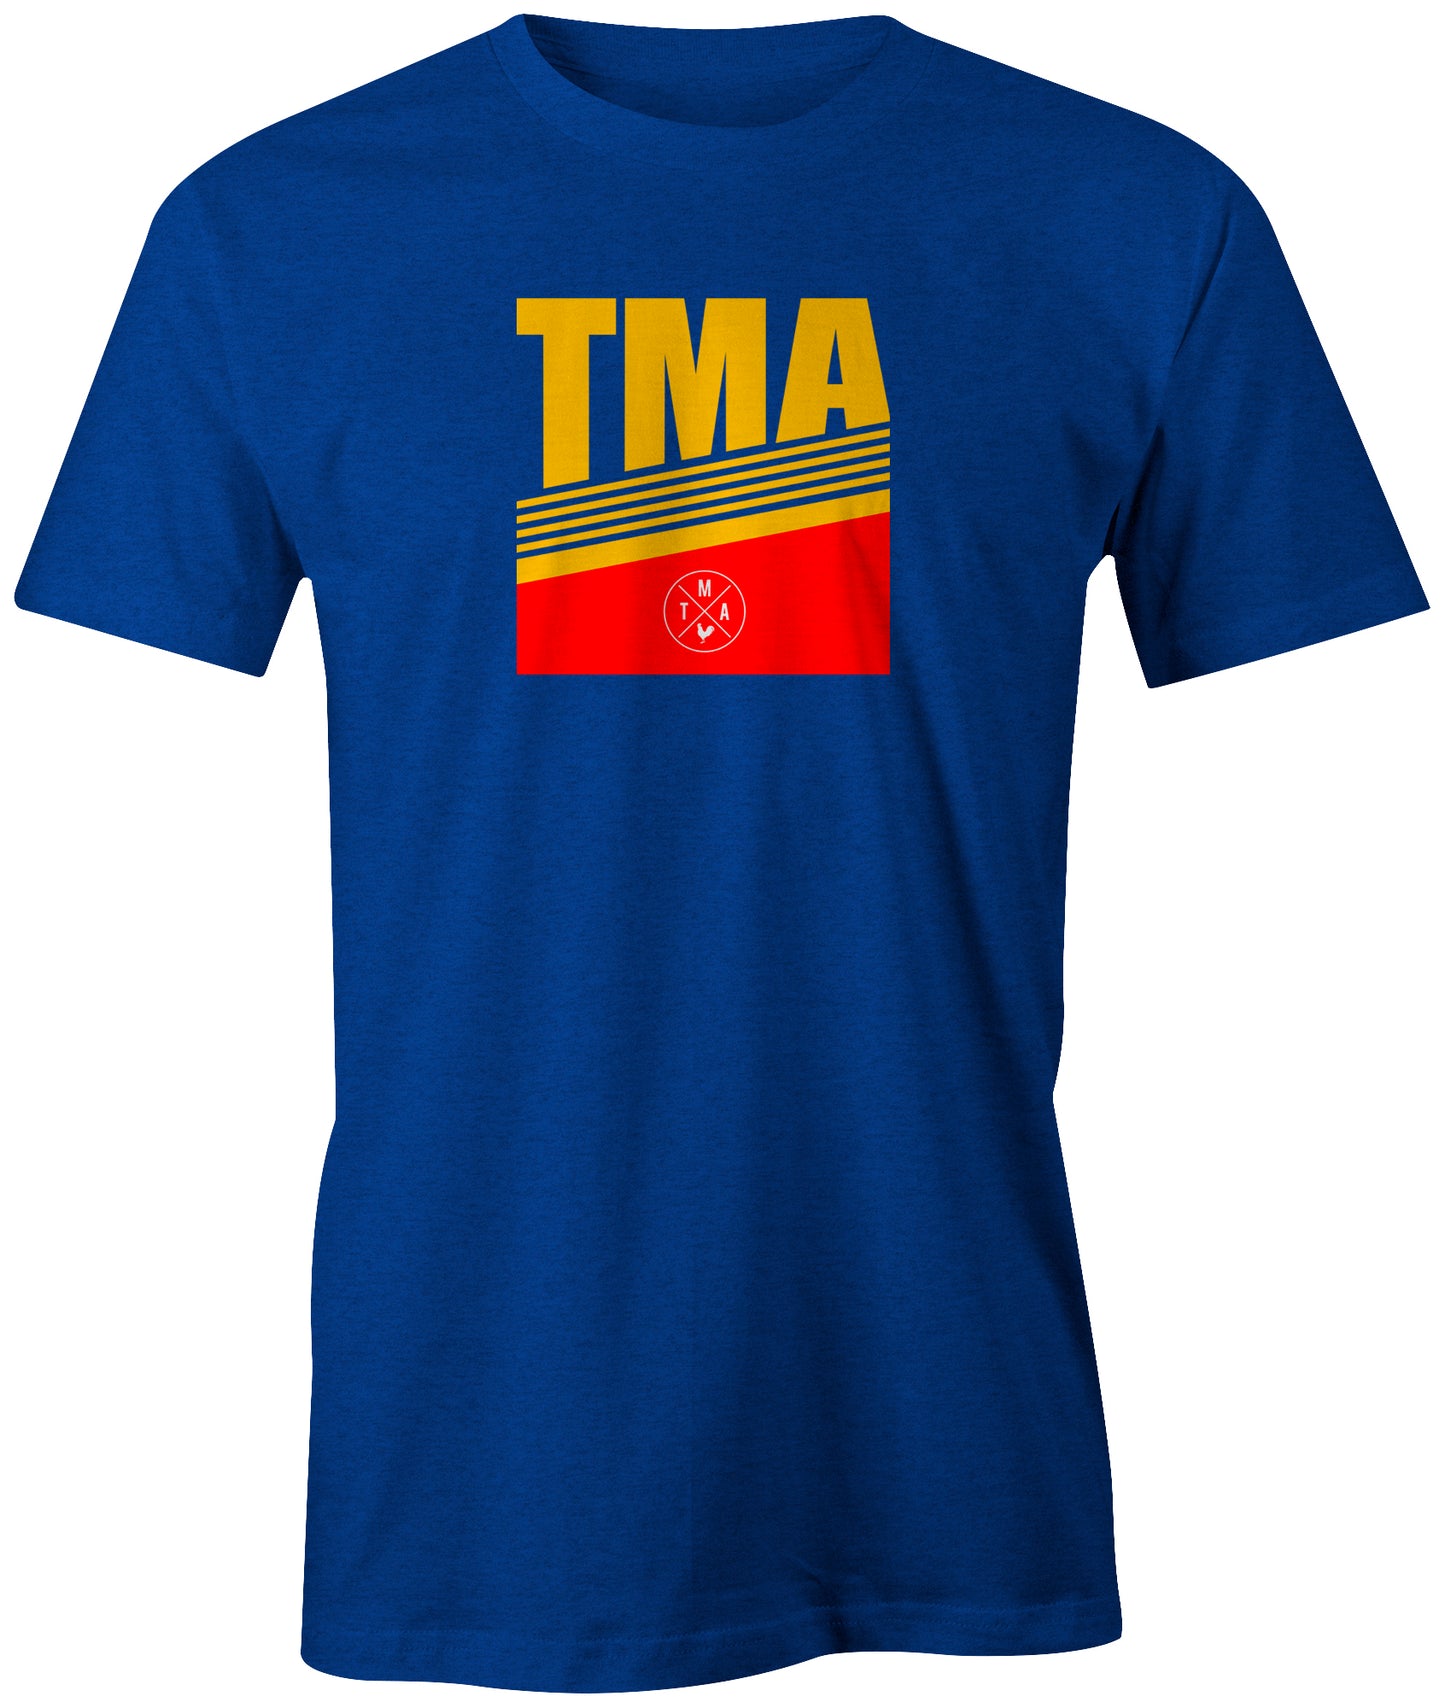 TMA Retro Blues T-shirt